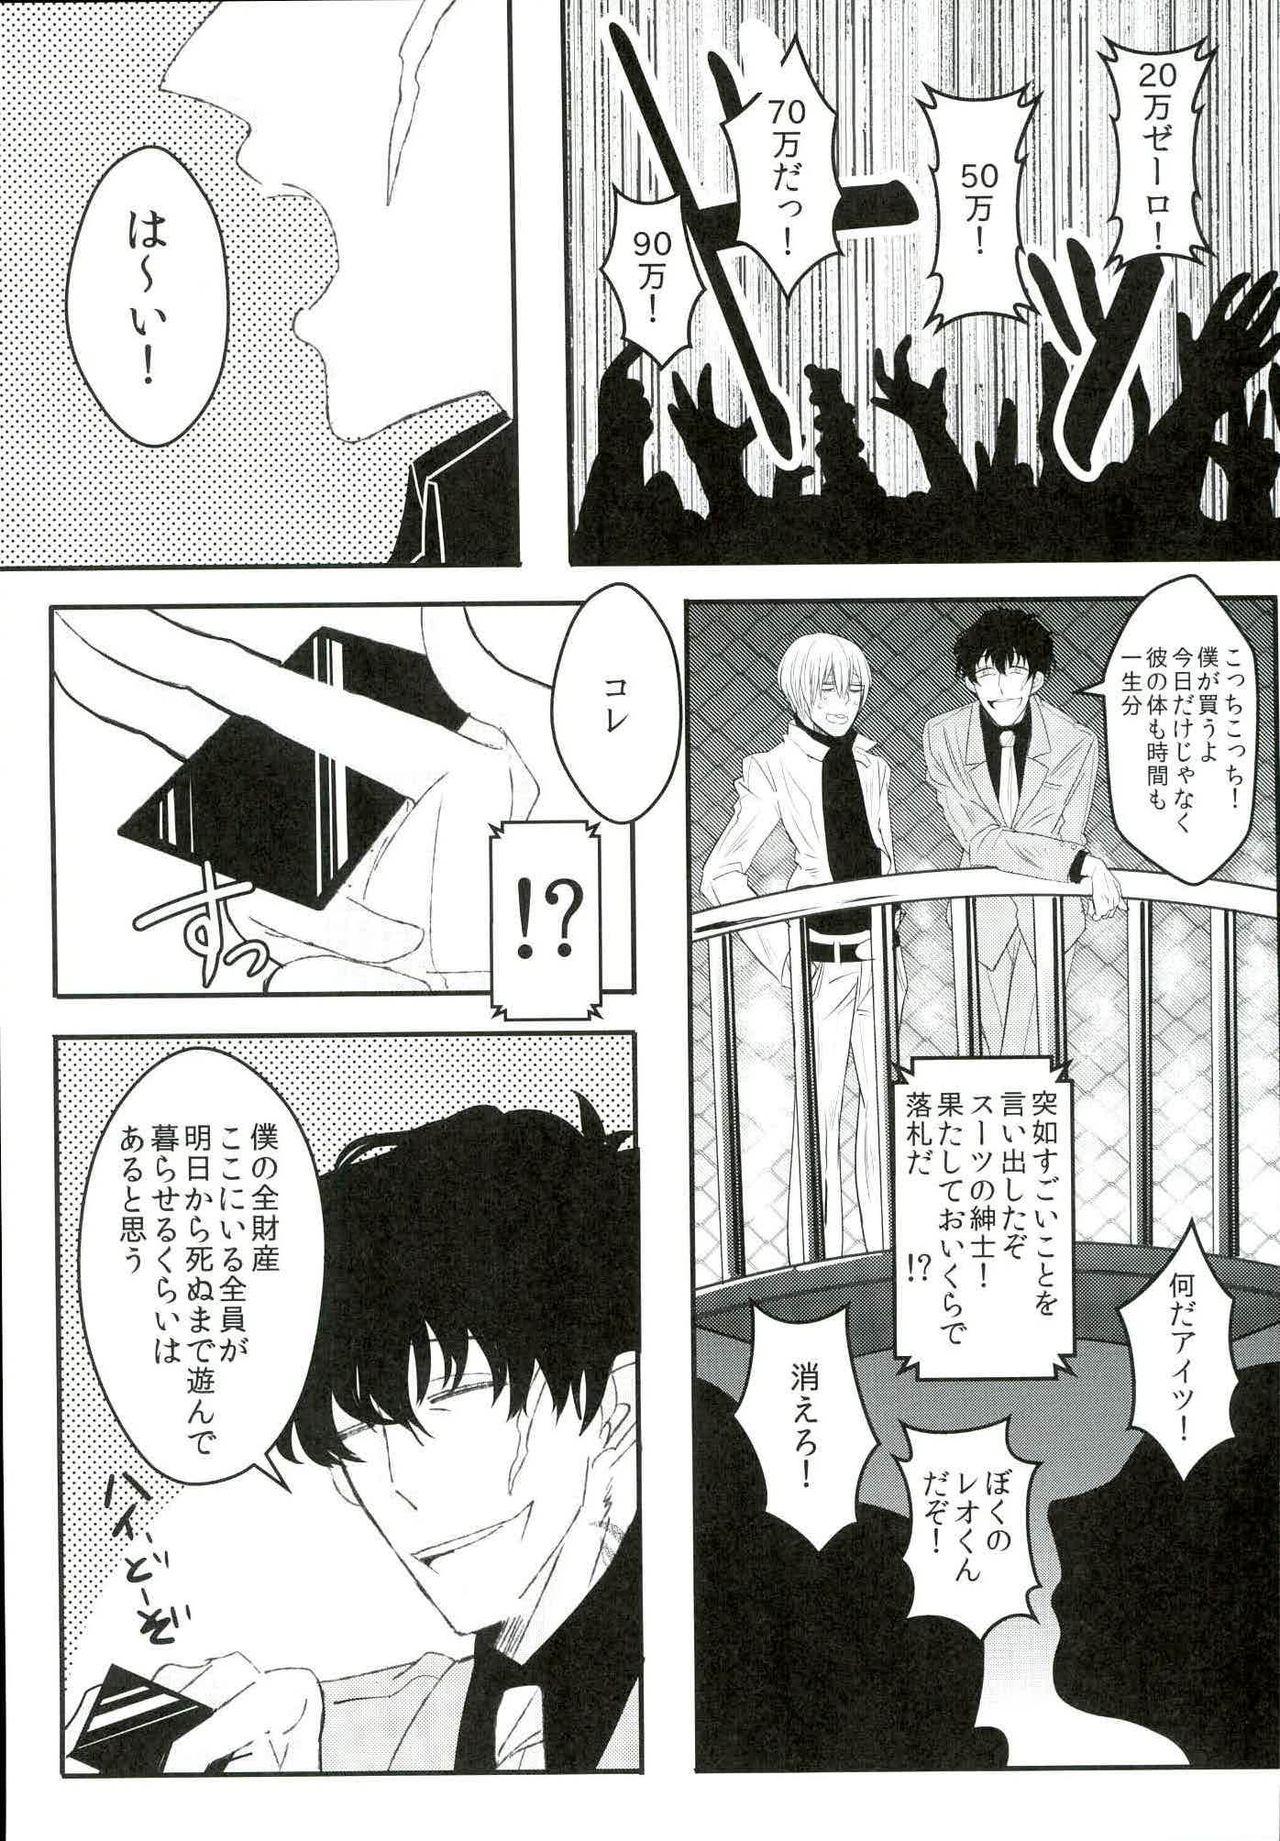 Red Head Leonardo Watch wa Shigoto o Erabanai. - Kekkai sensen Highheels - Page 10